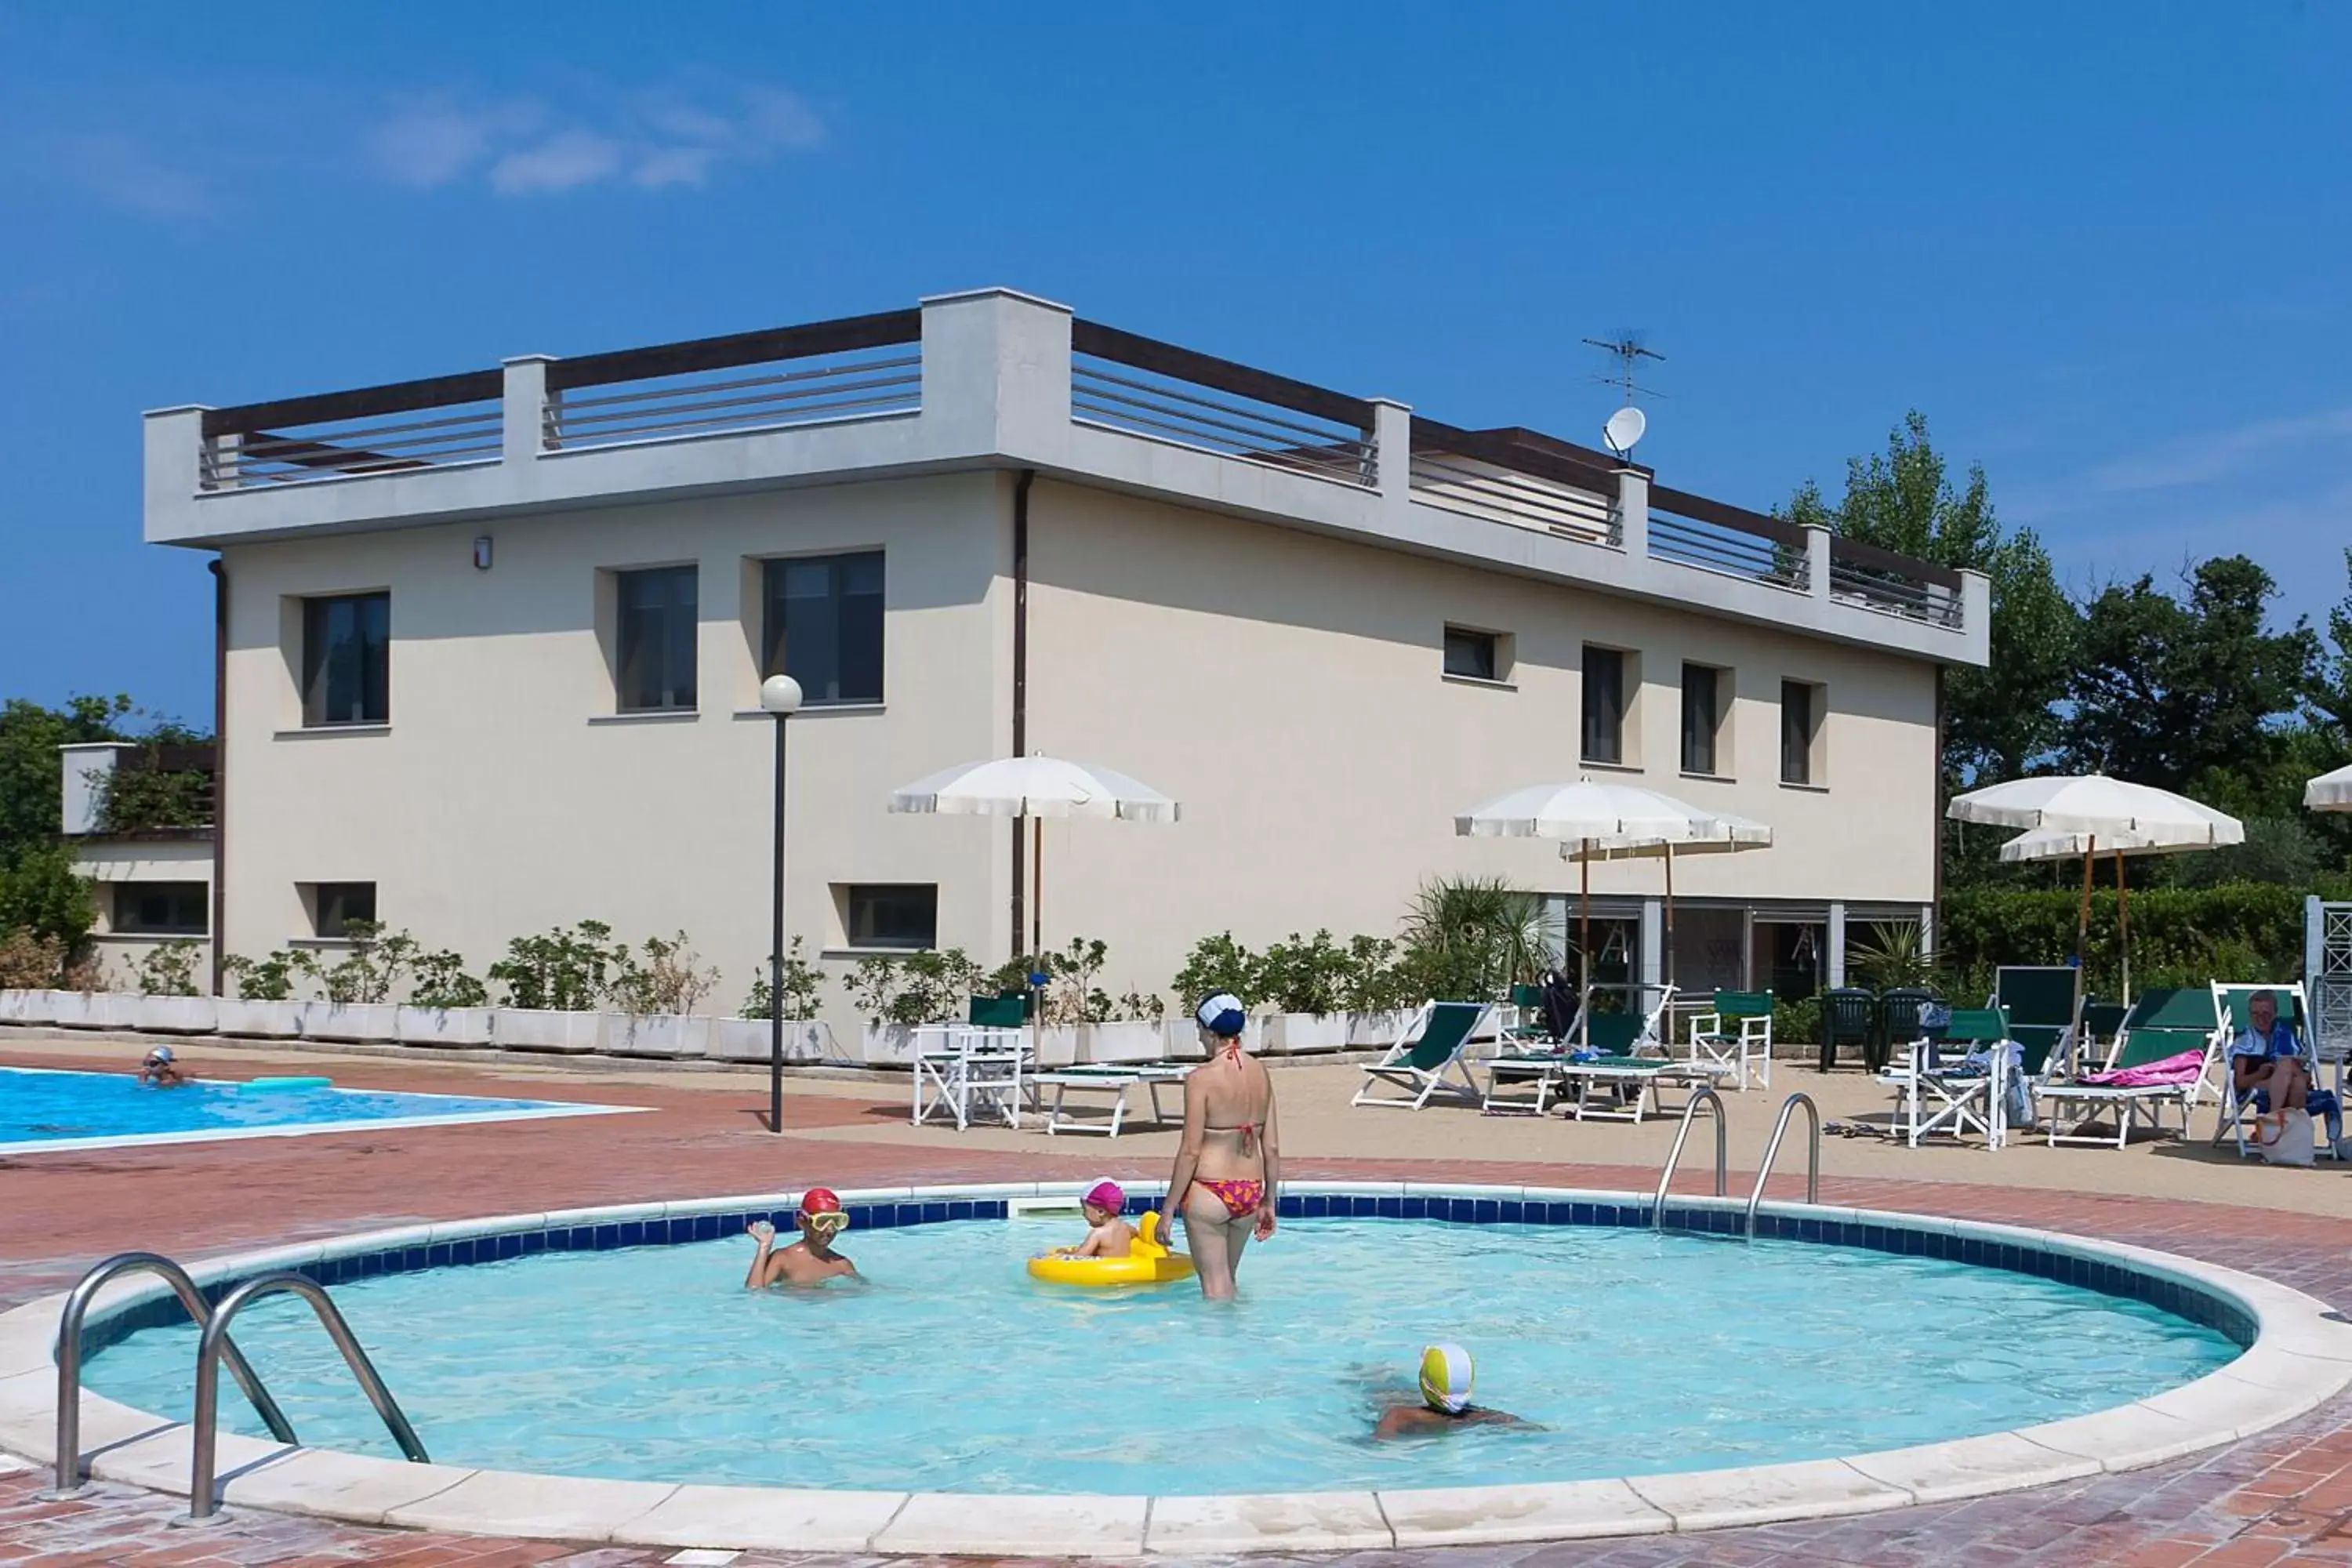 Swimming pool, Property Building in Le Residenze di Santa Costanza - Mirto/Corbezzolo